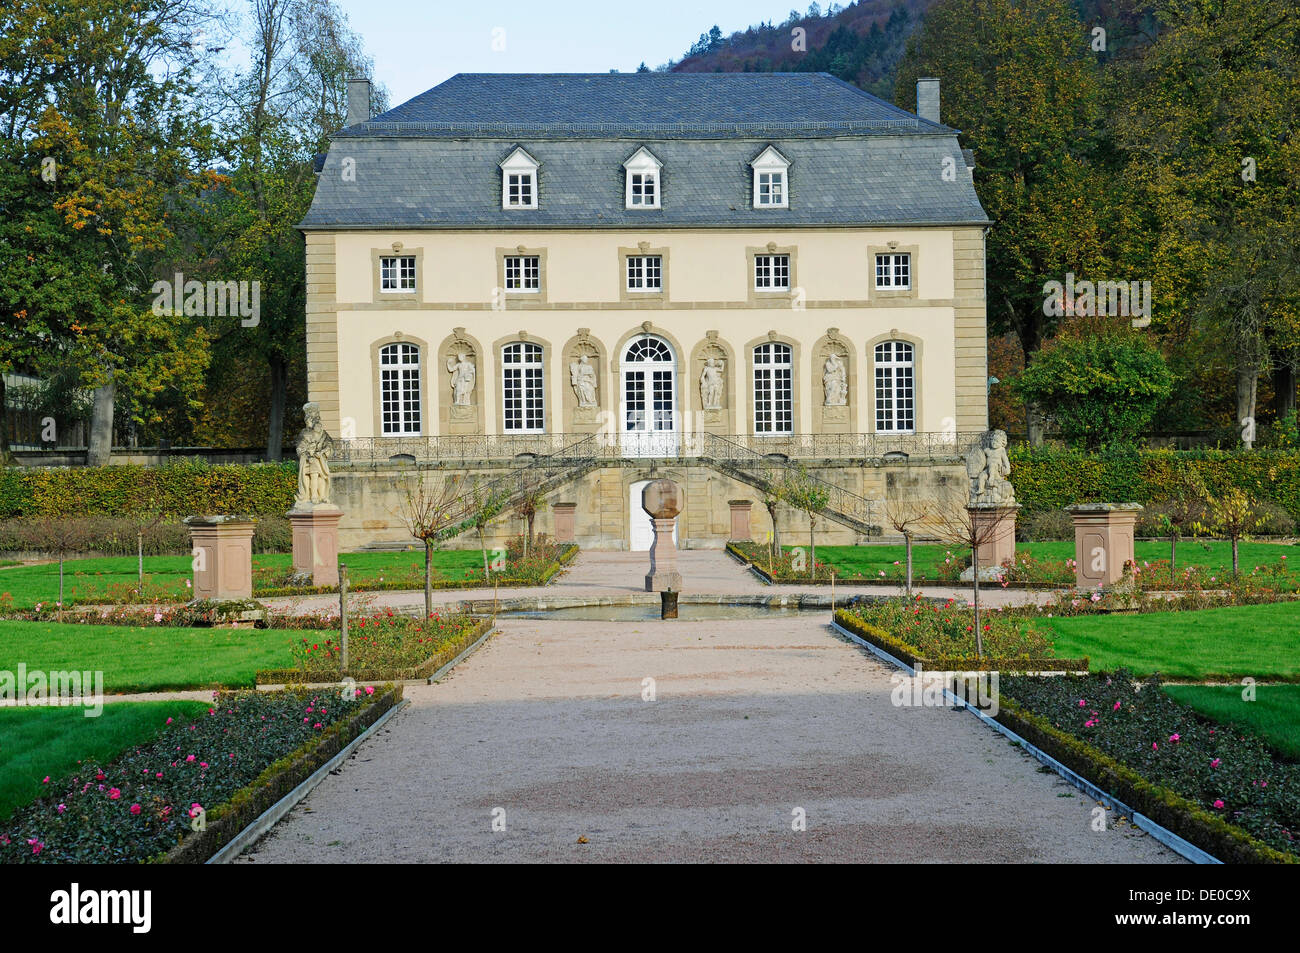 Orangery, monastery garden, Echternach, Luxembourg, Europe, PublicGround Stock Photo